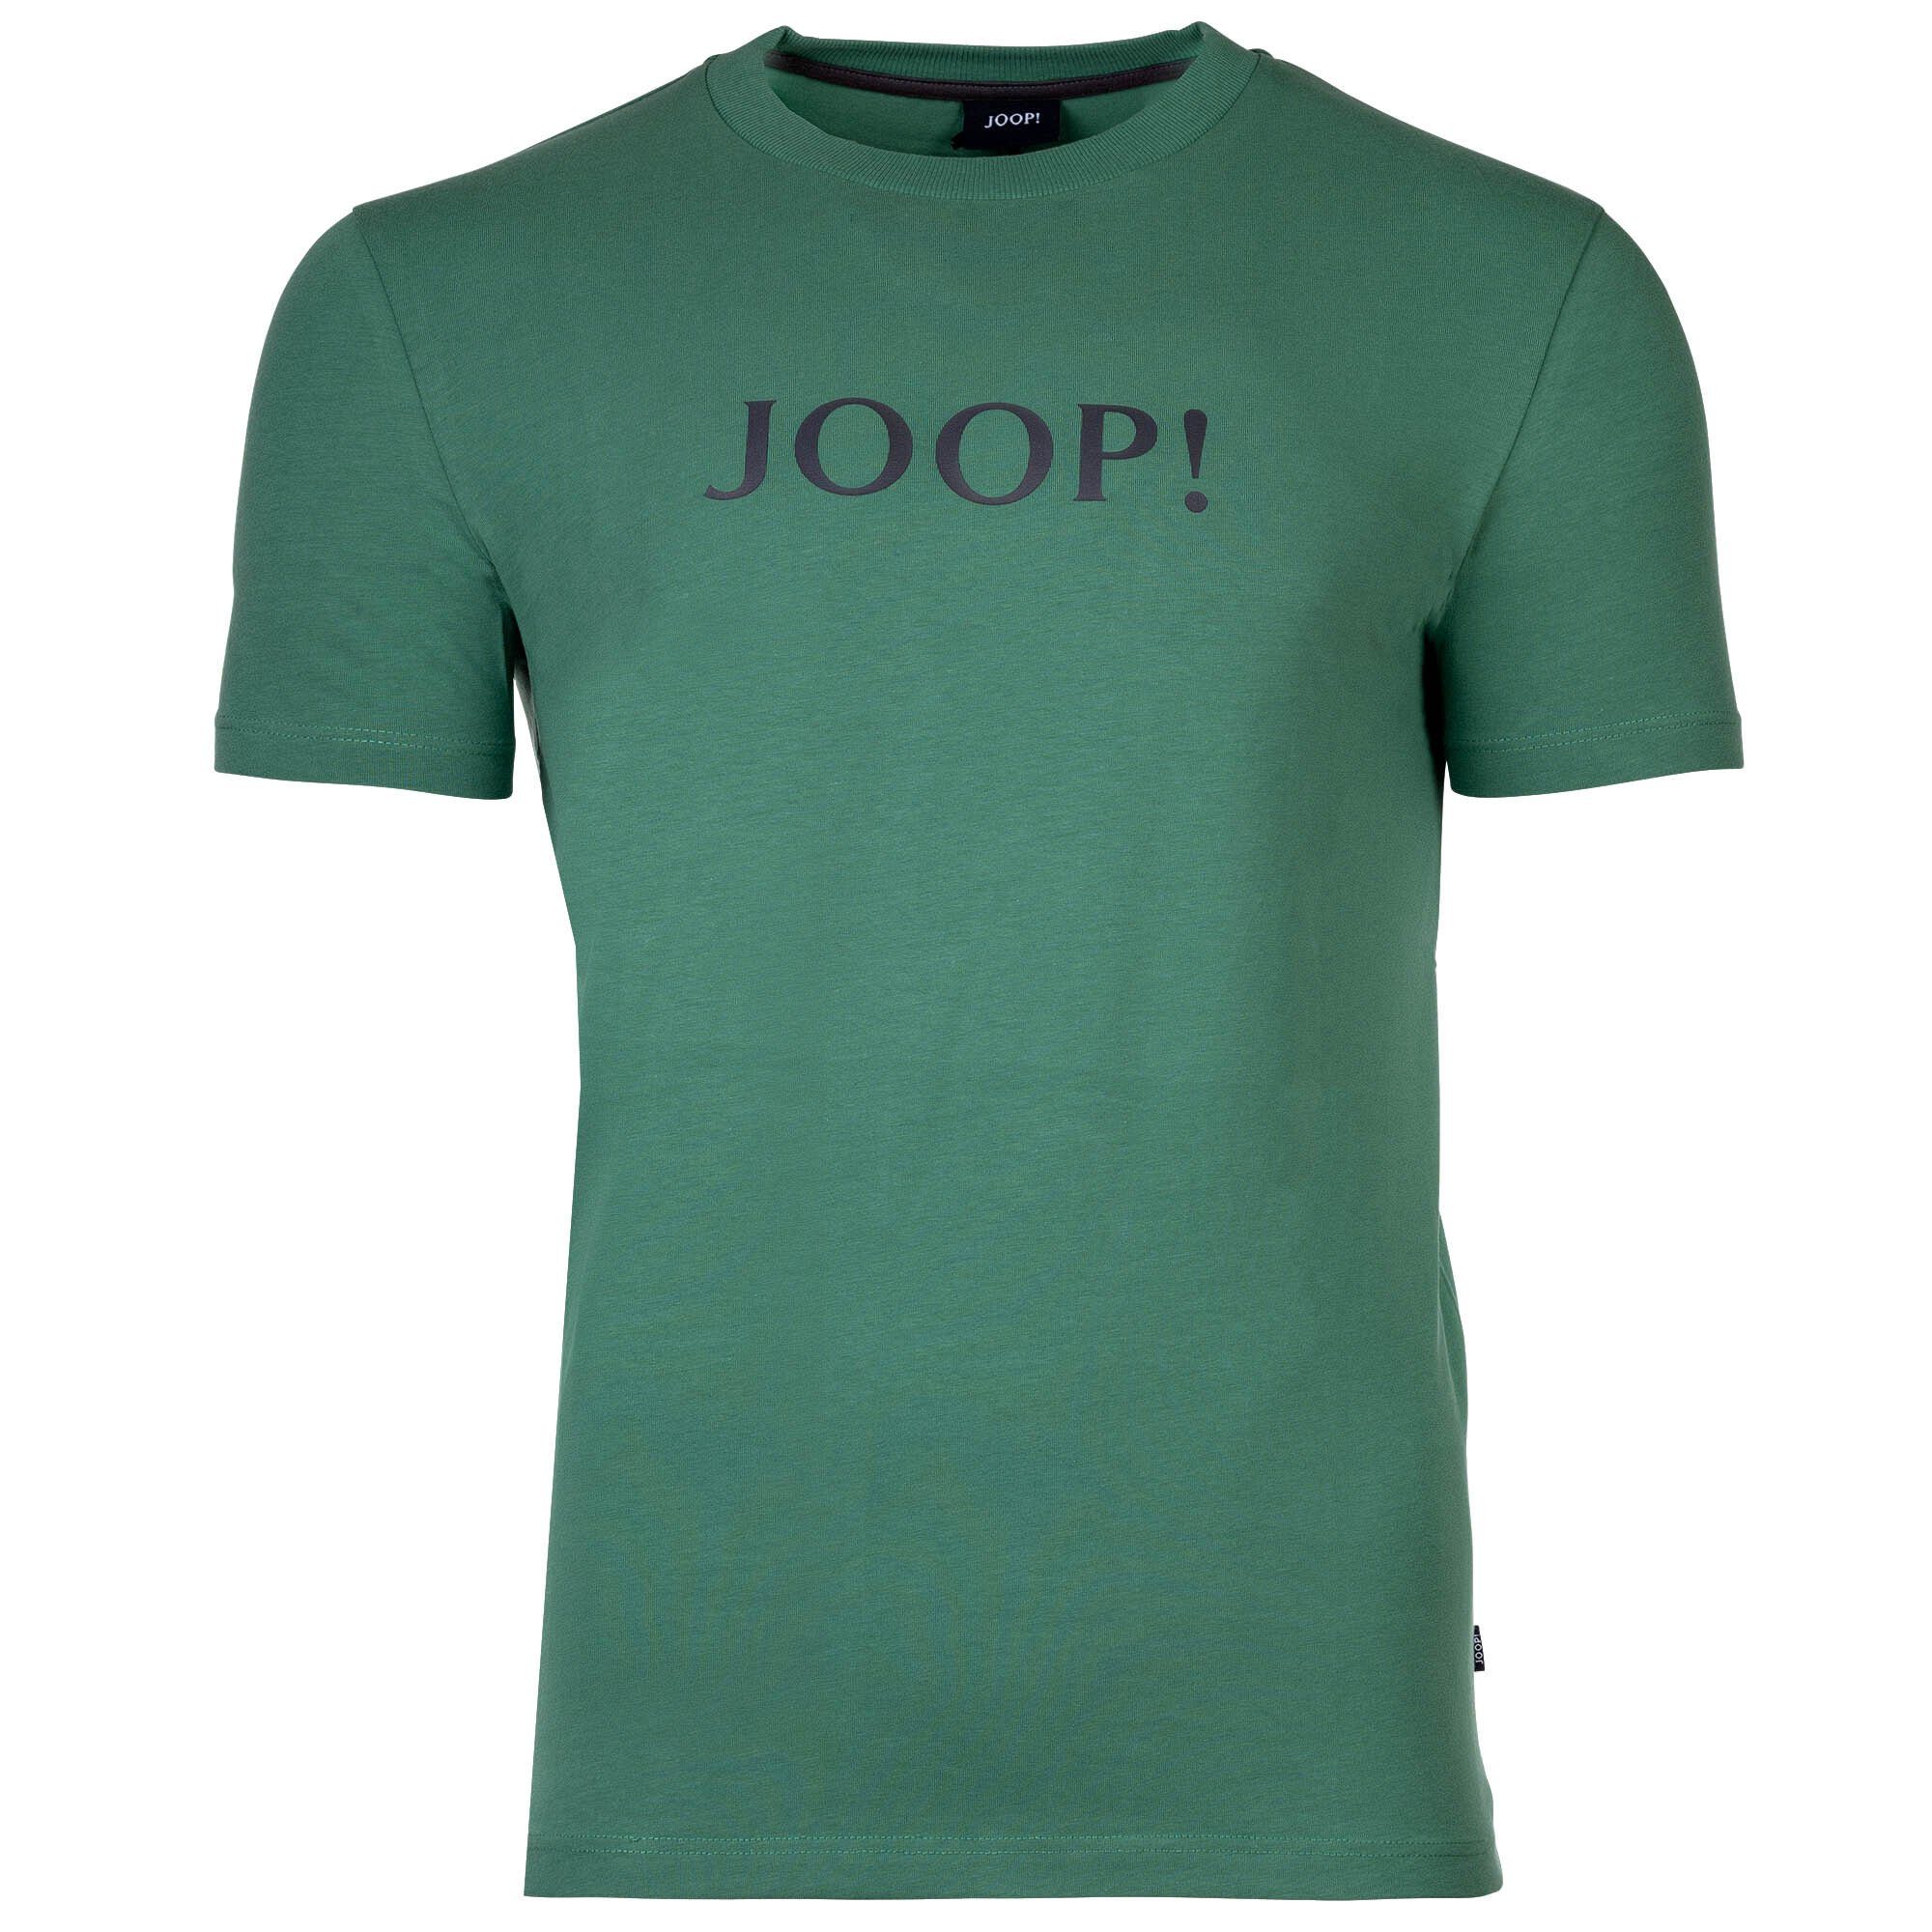 Joop! T-Shirt Herren T-Shirt - Loungewear, Rundhals, Halbarm Hellgrün